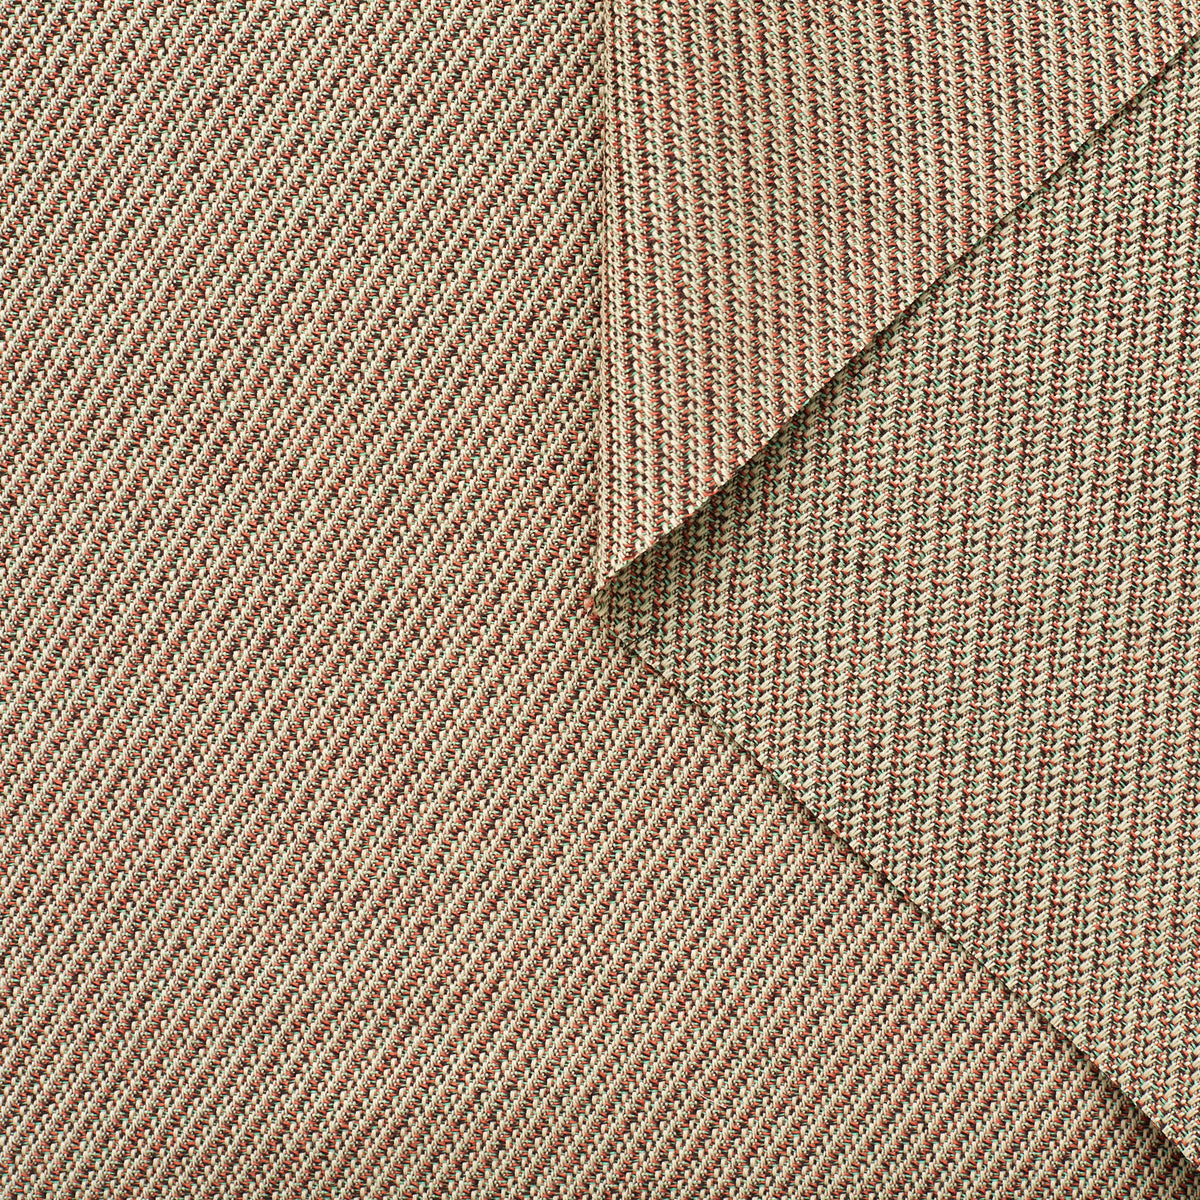 T22A02536 | Wool Diagonal Tweed